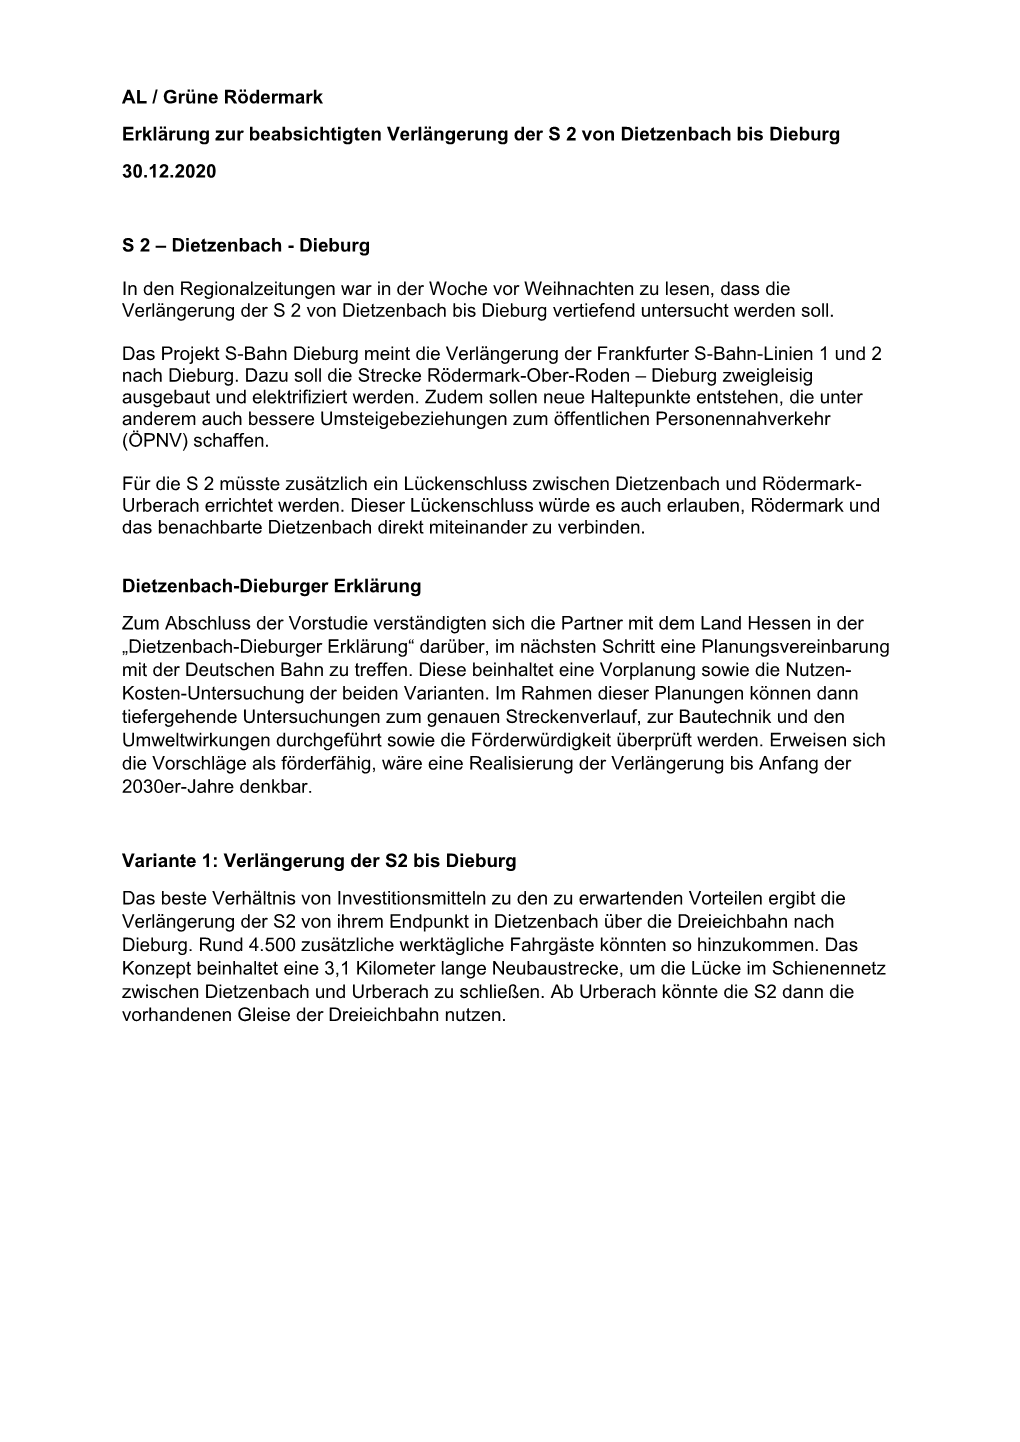 AL / Grüne Rödermark Erklärung Zur Beabsichtigten Verlängerung Der S 2 Von Dietzenbach Bis Dieburg 30.12.2020